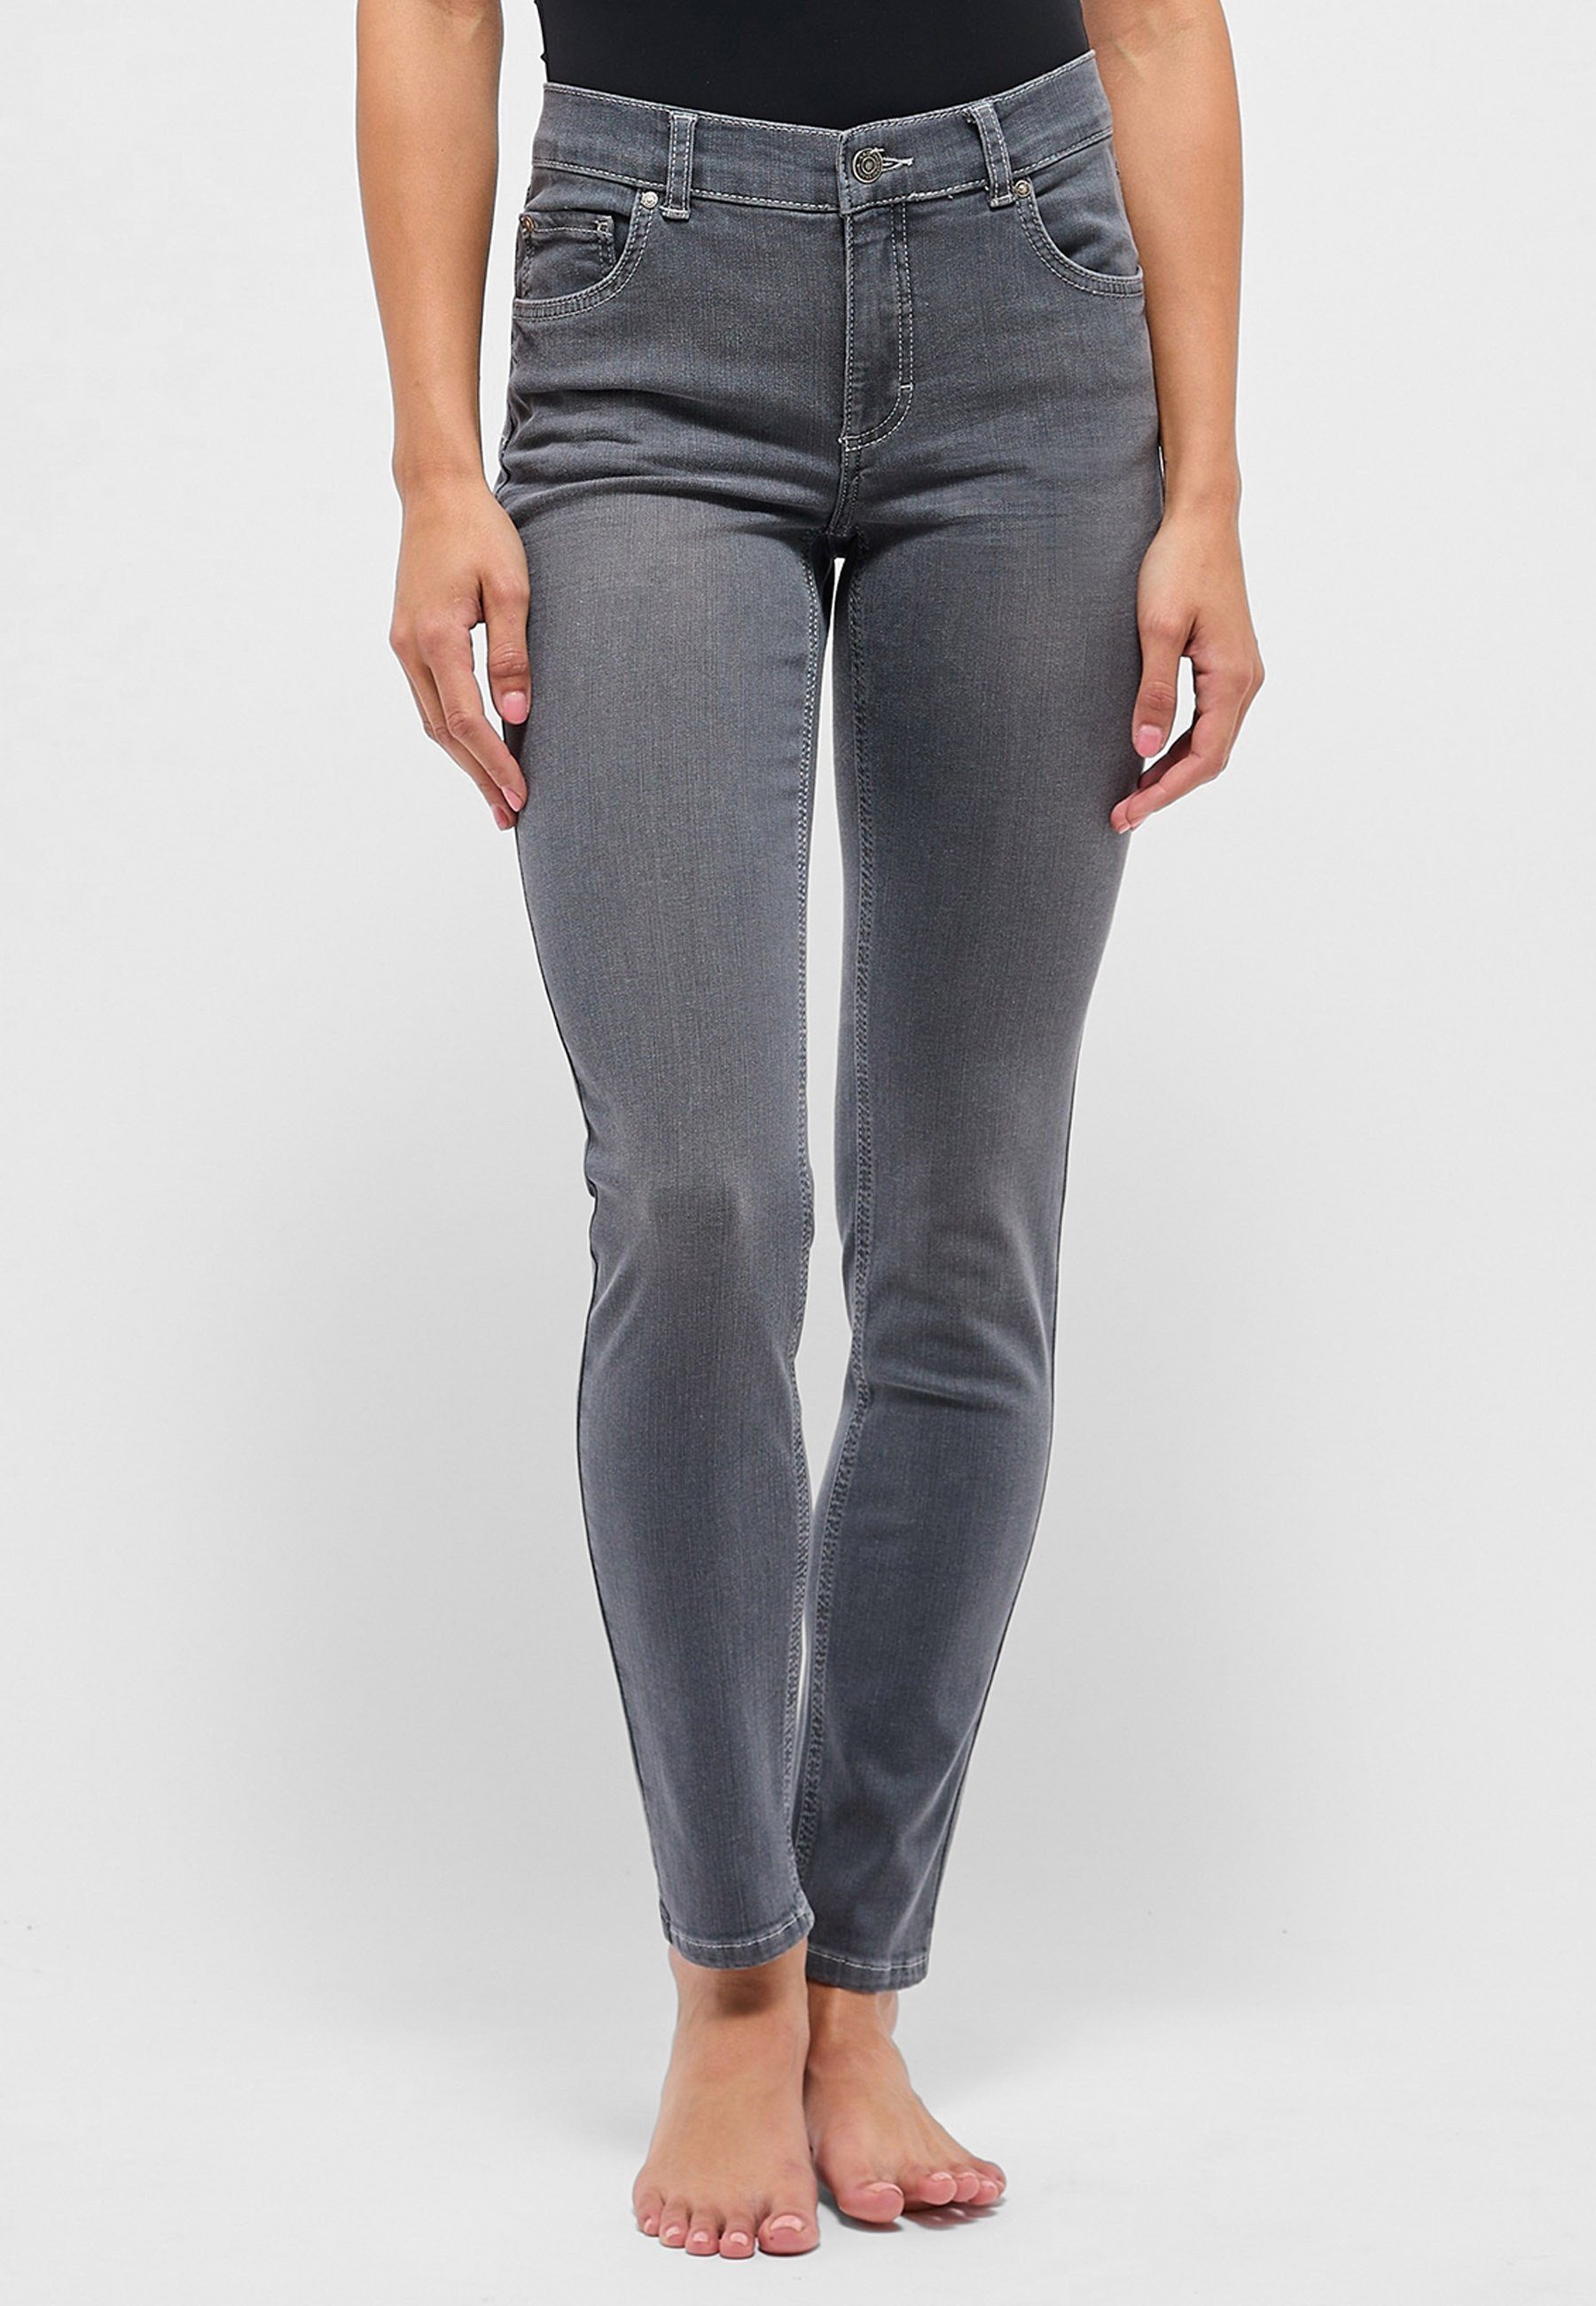 grau Slim-fit-Jeans authentischem Denim Label-Applikationen Jeans Skinny mit ANGELS mit